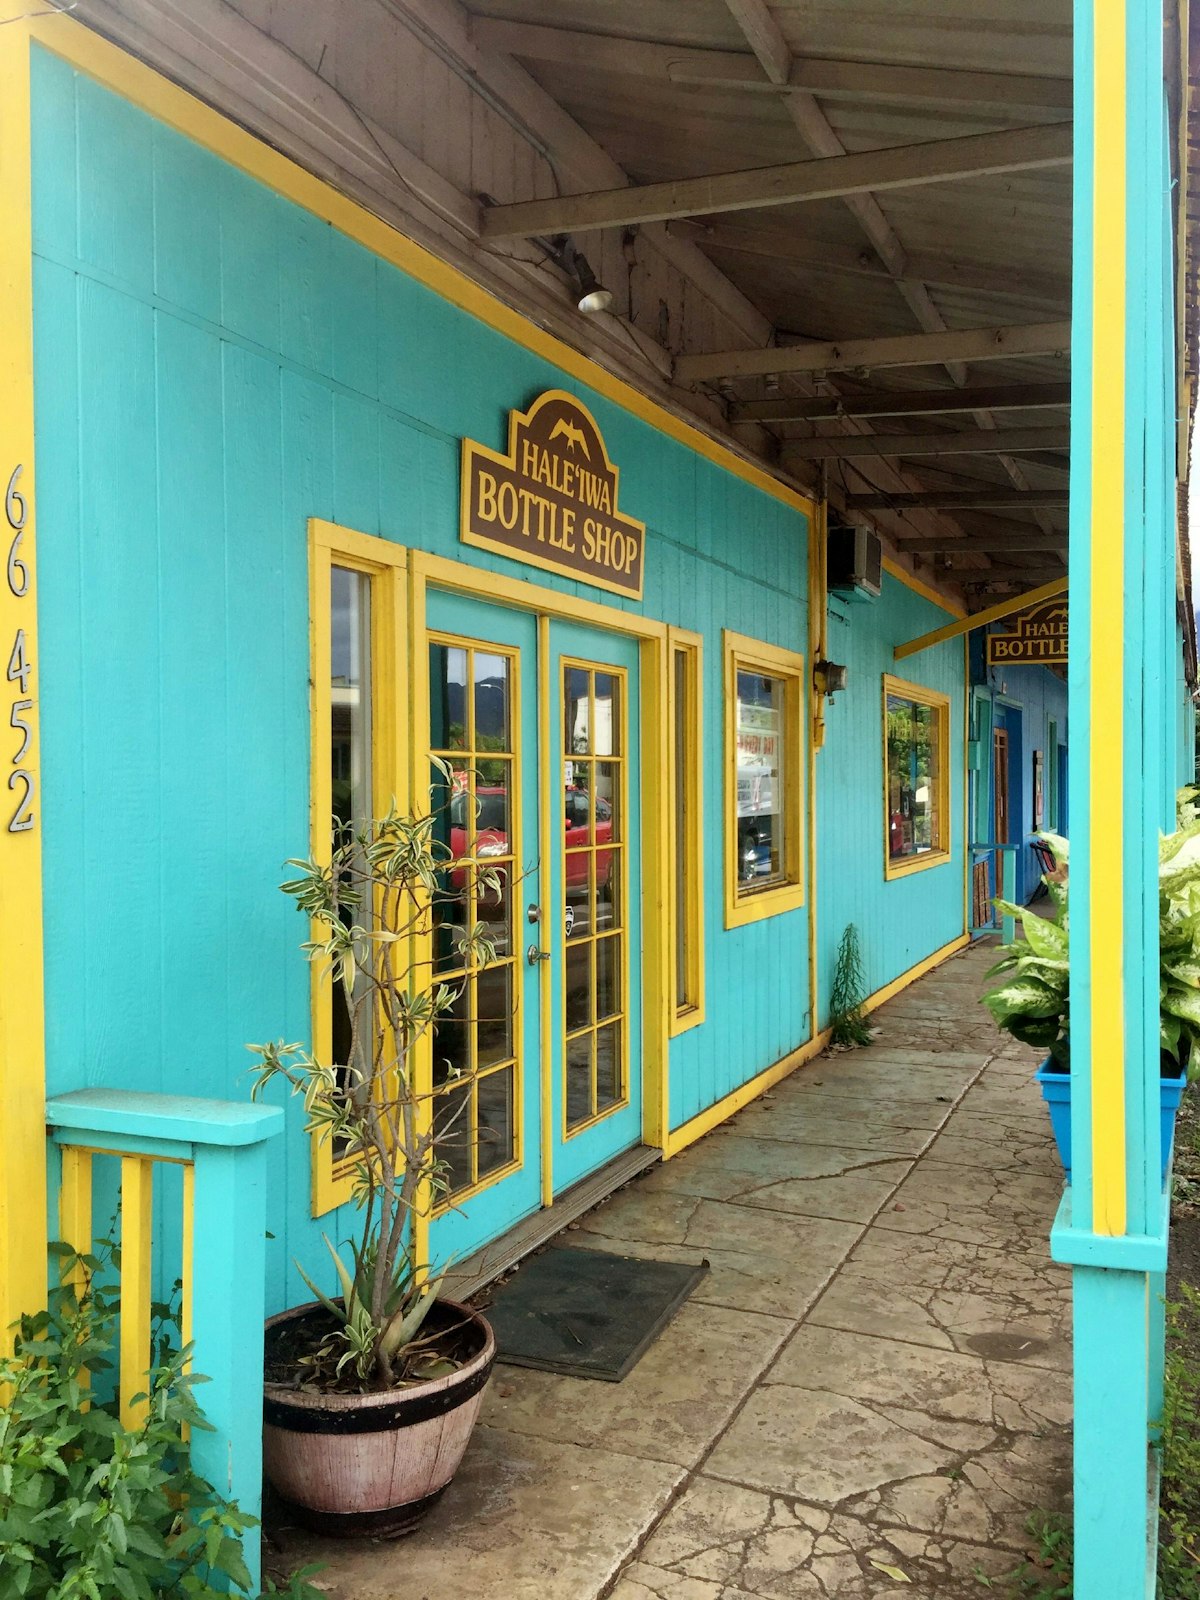 Exterior of Haleiwa Bottle Shop bar in Hale'iwa, Oahu, Hawaii